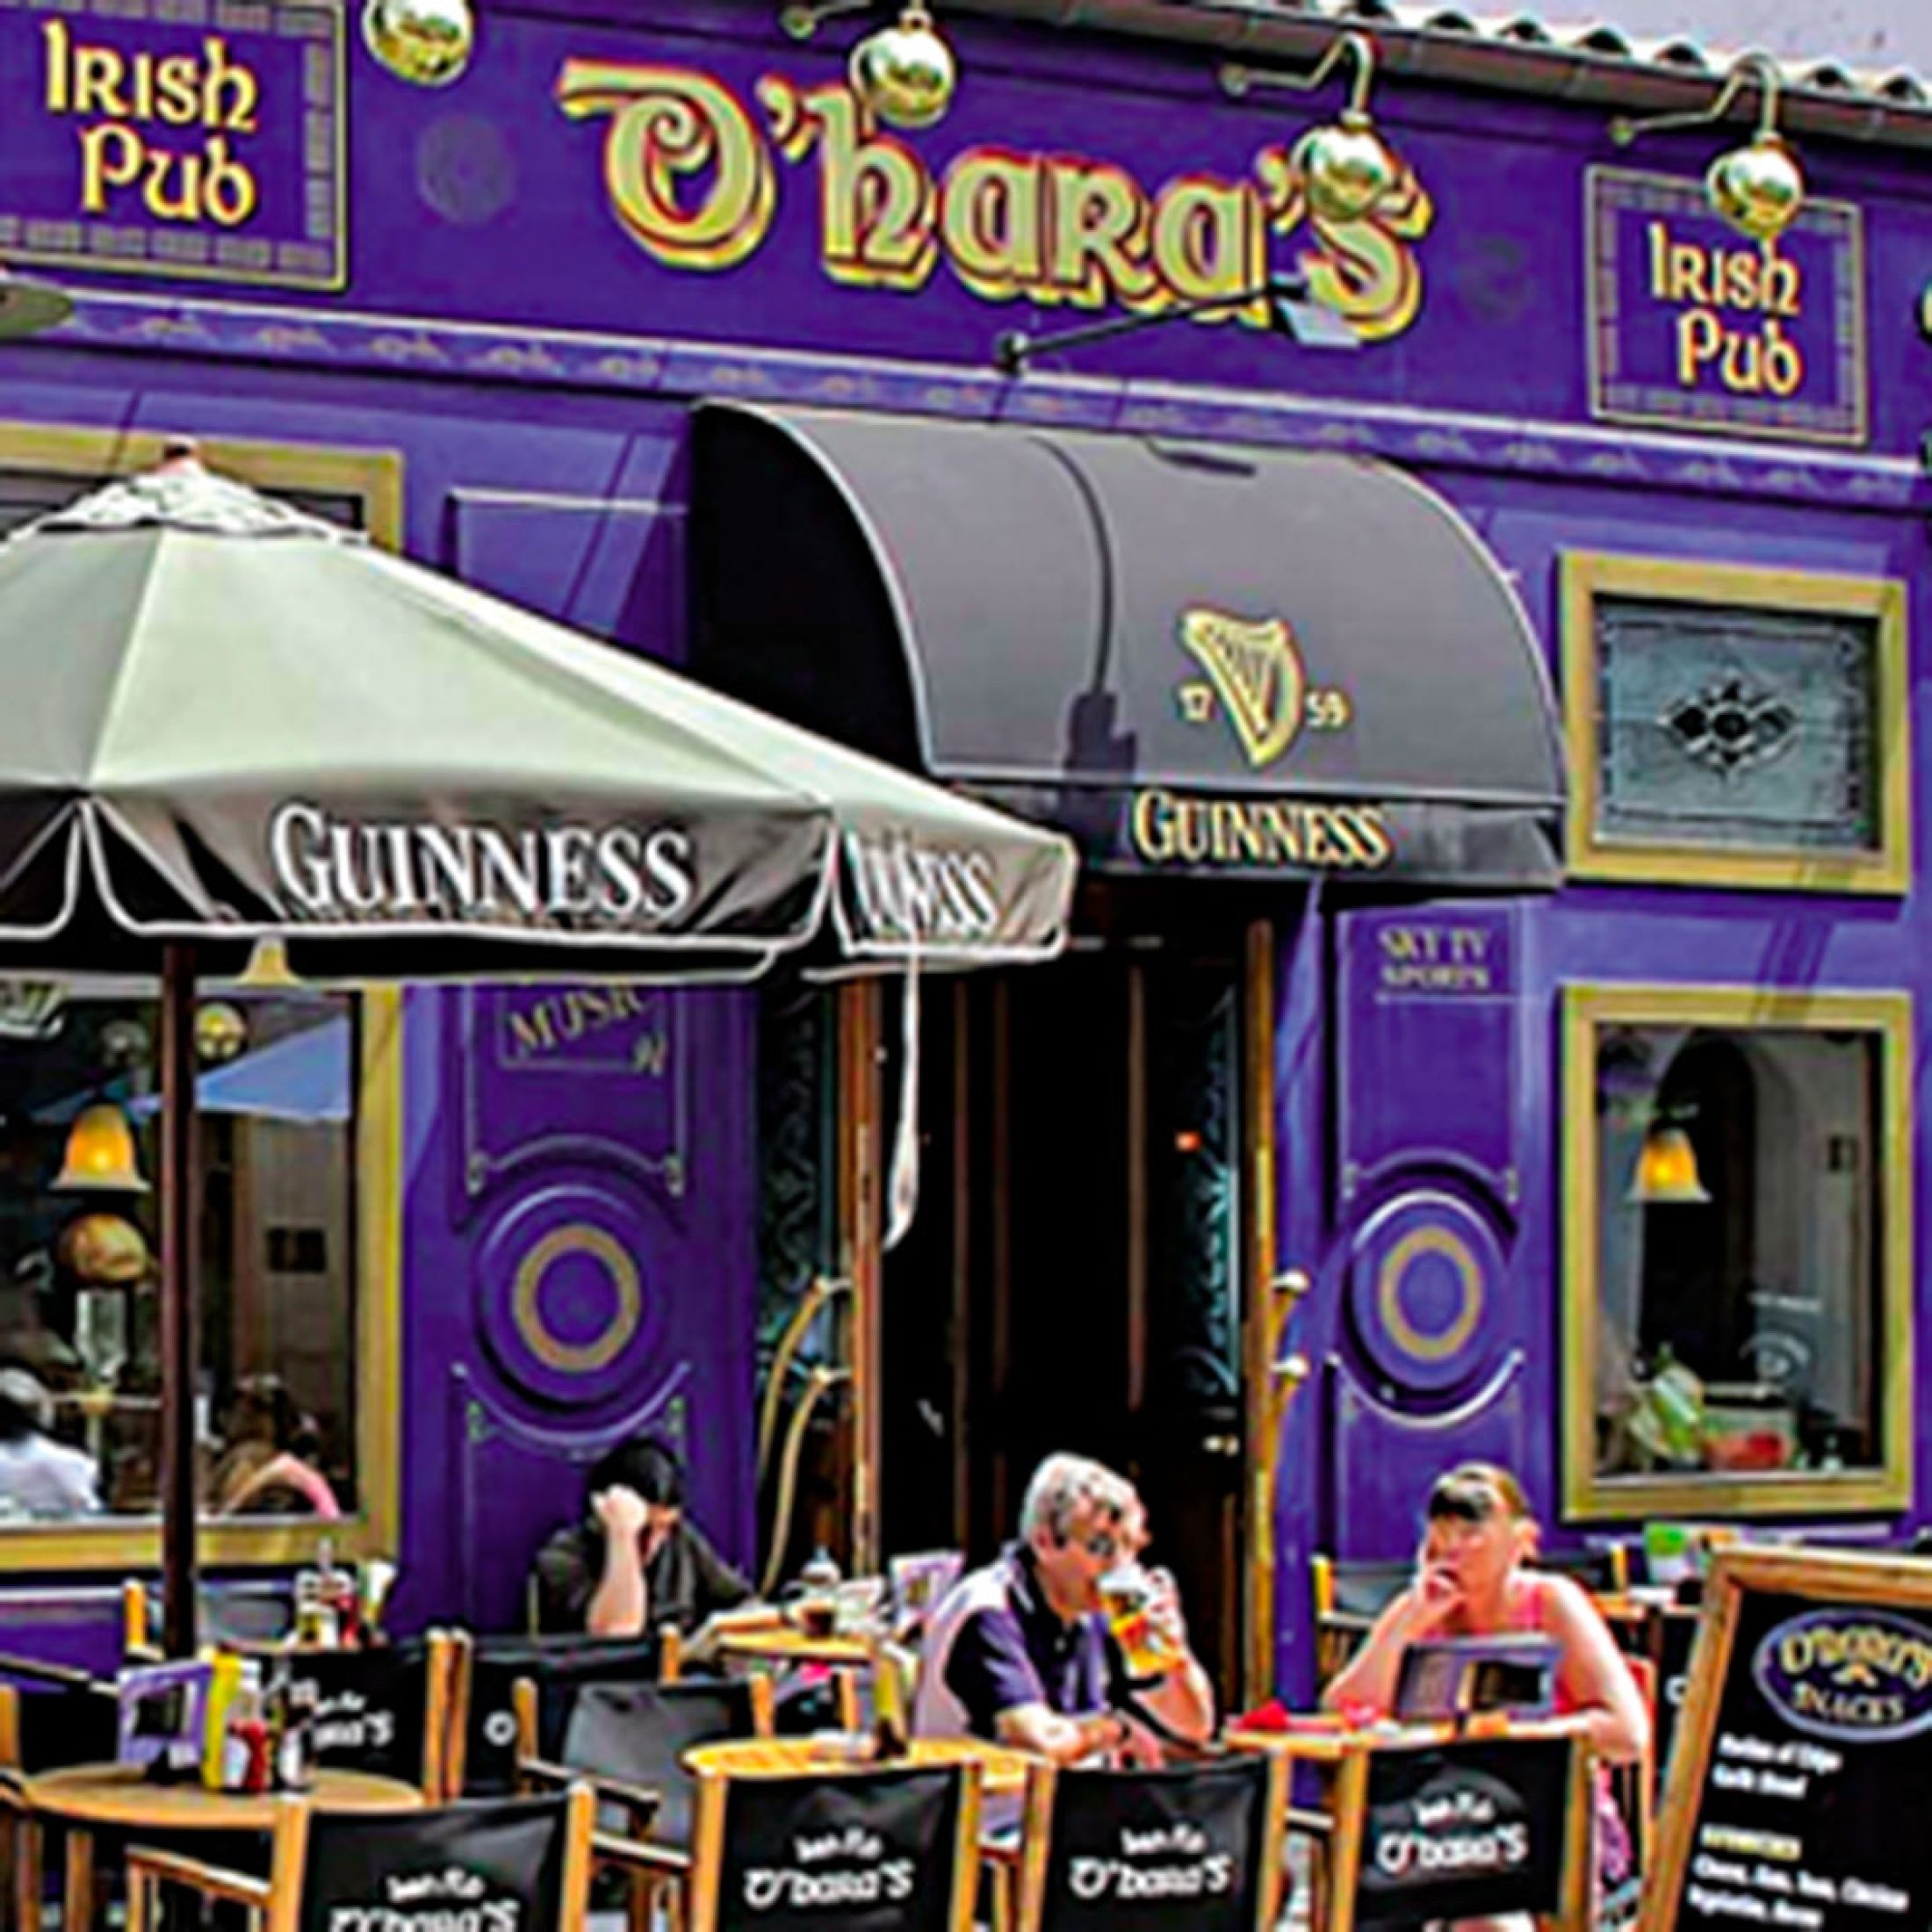 O'hara's Irish Pub